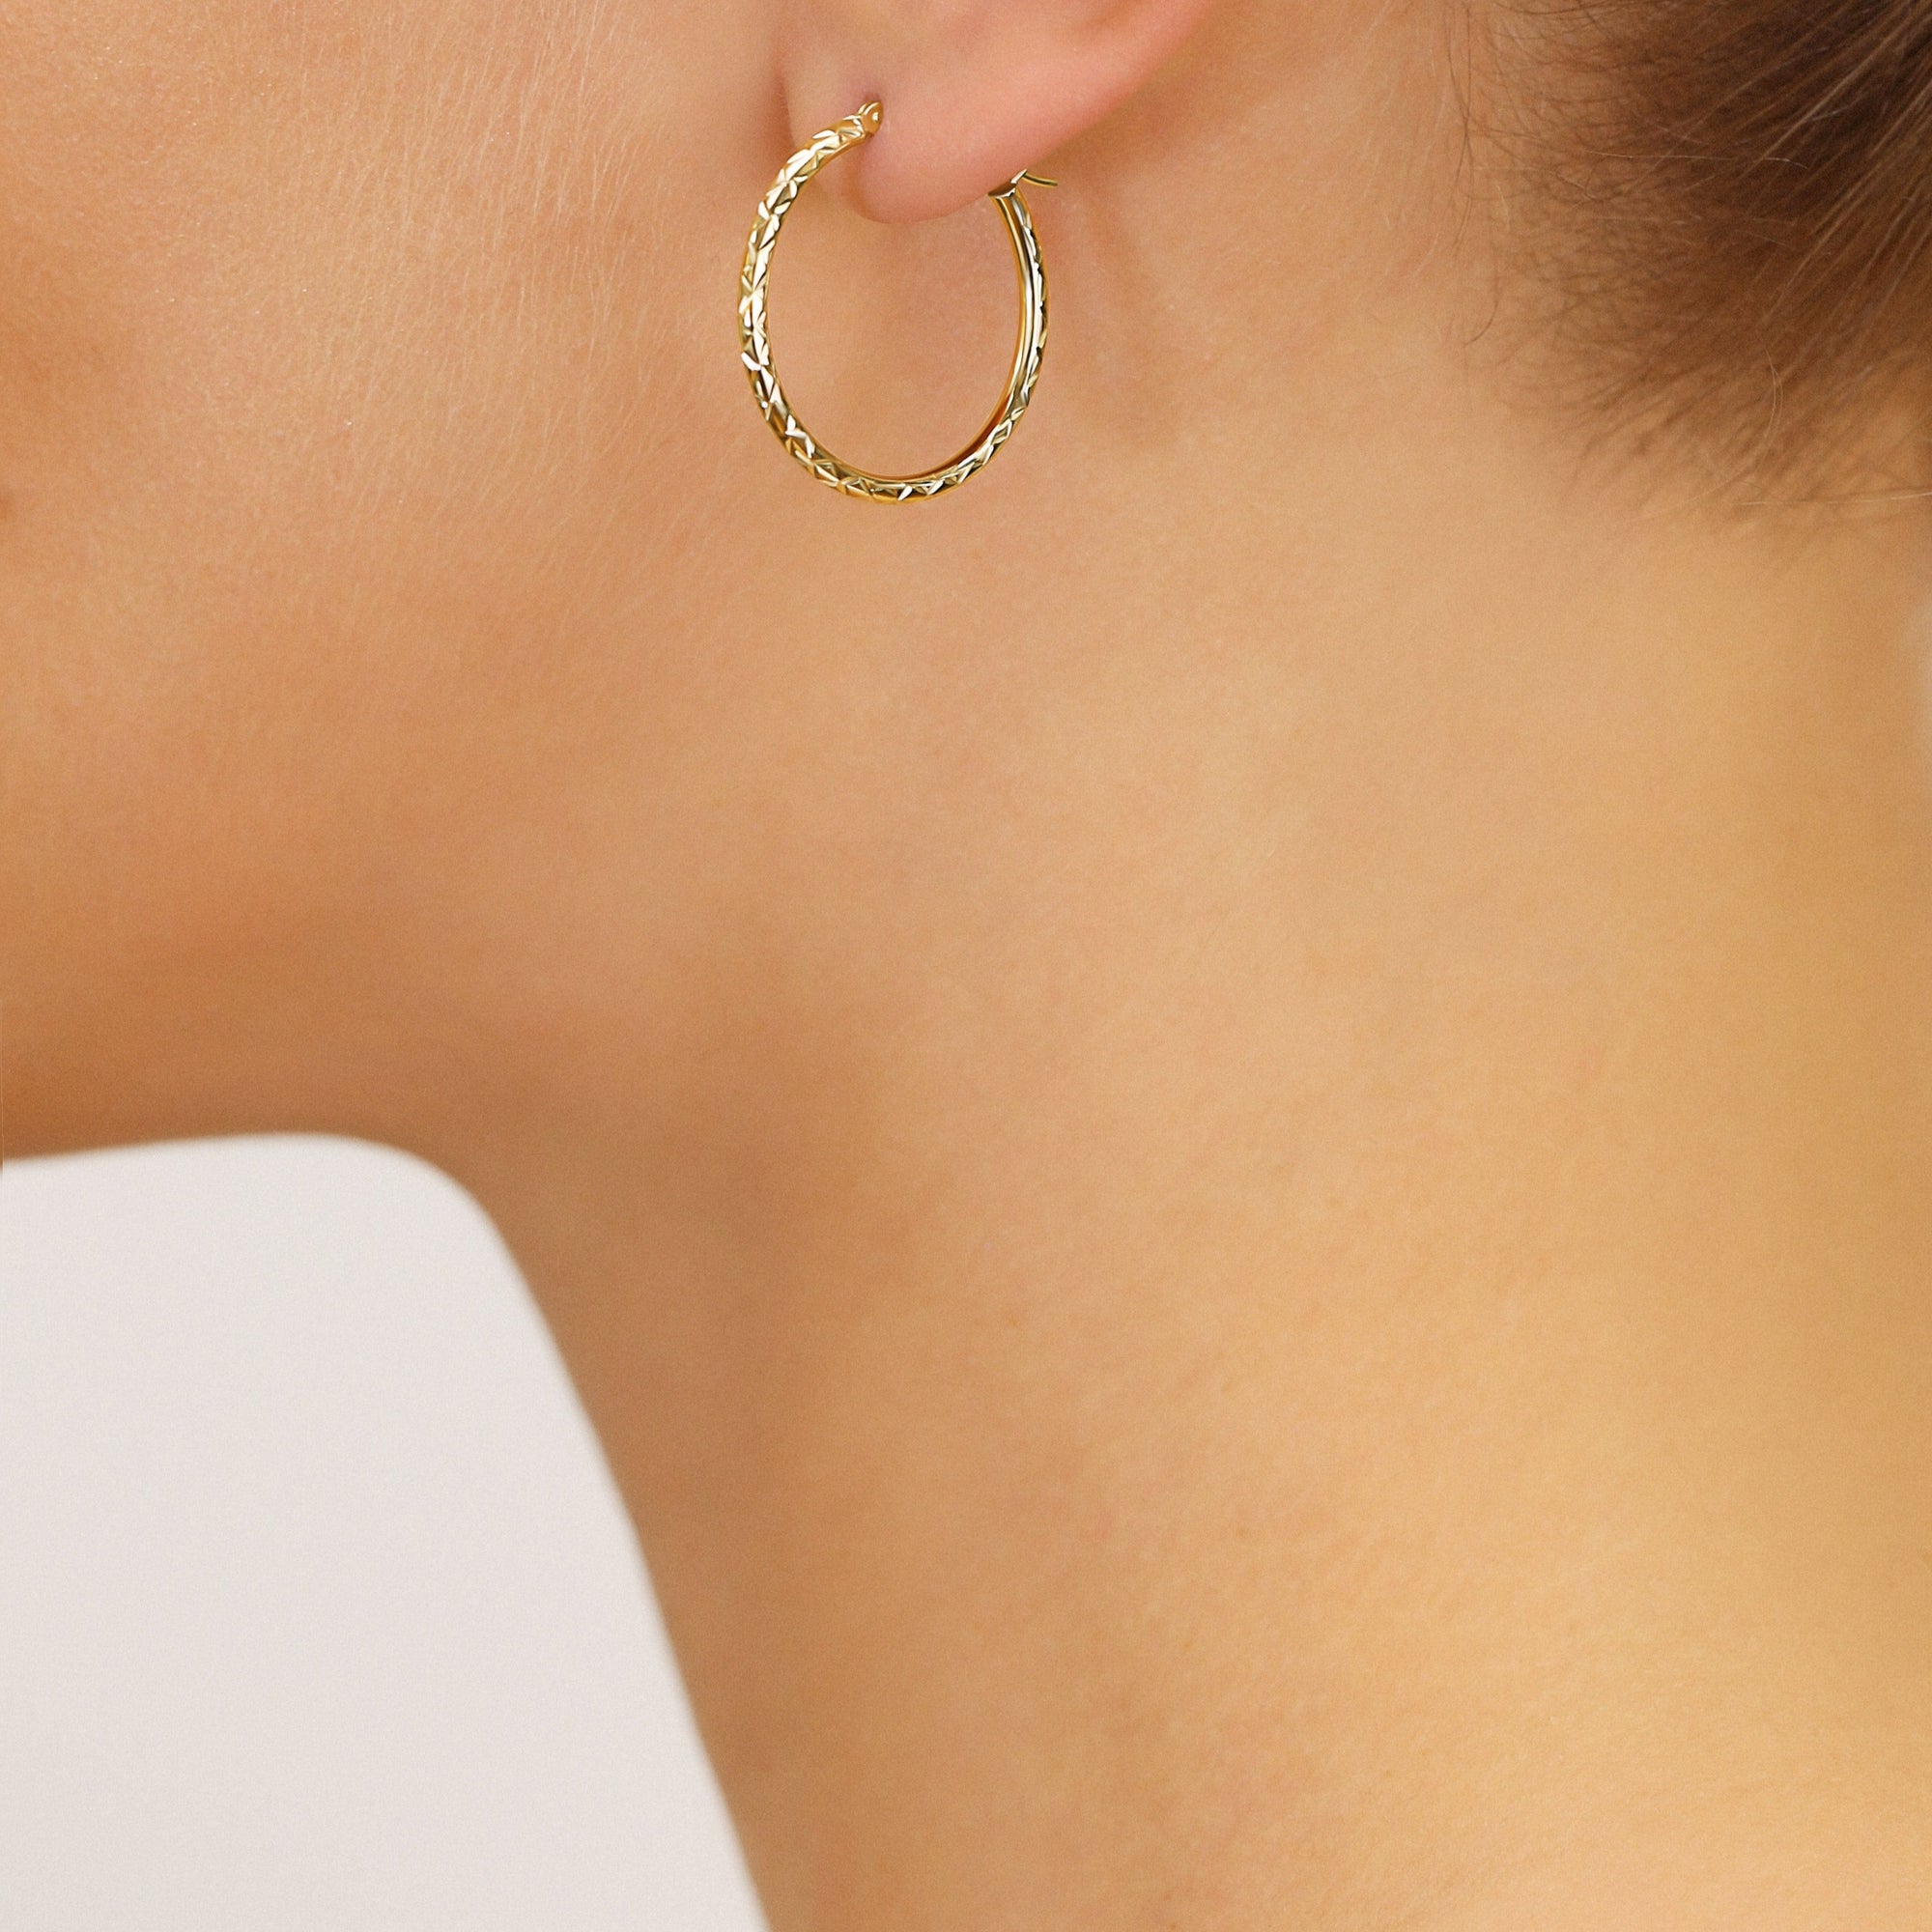 14k Gold X Pattern Diamond Cut Hoop Earrings, 1 Inch